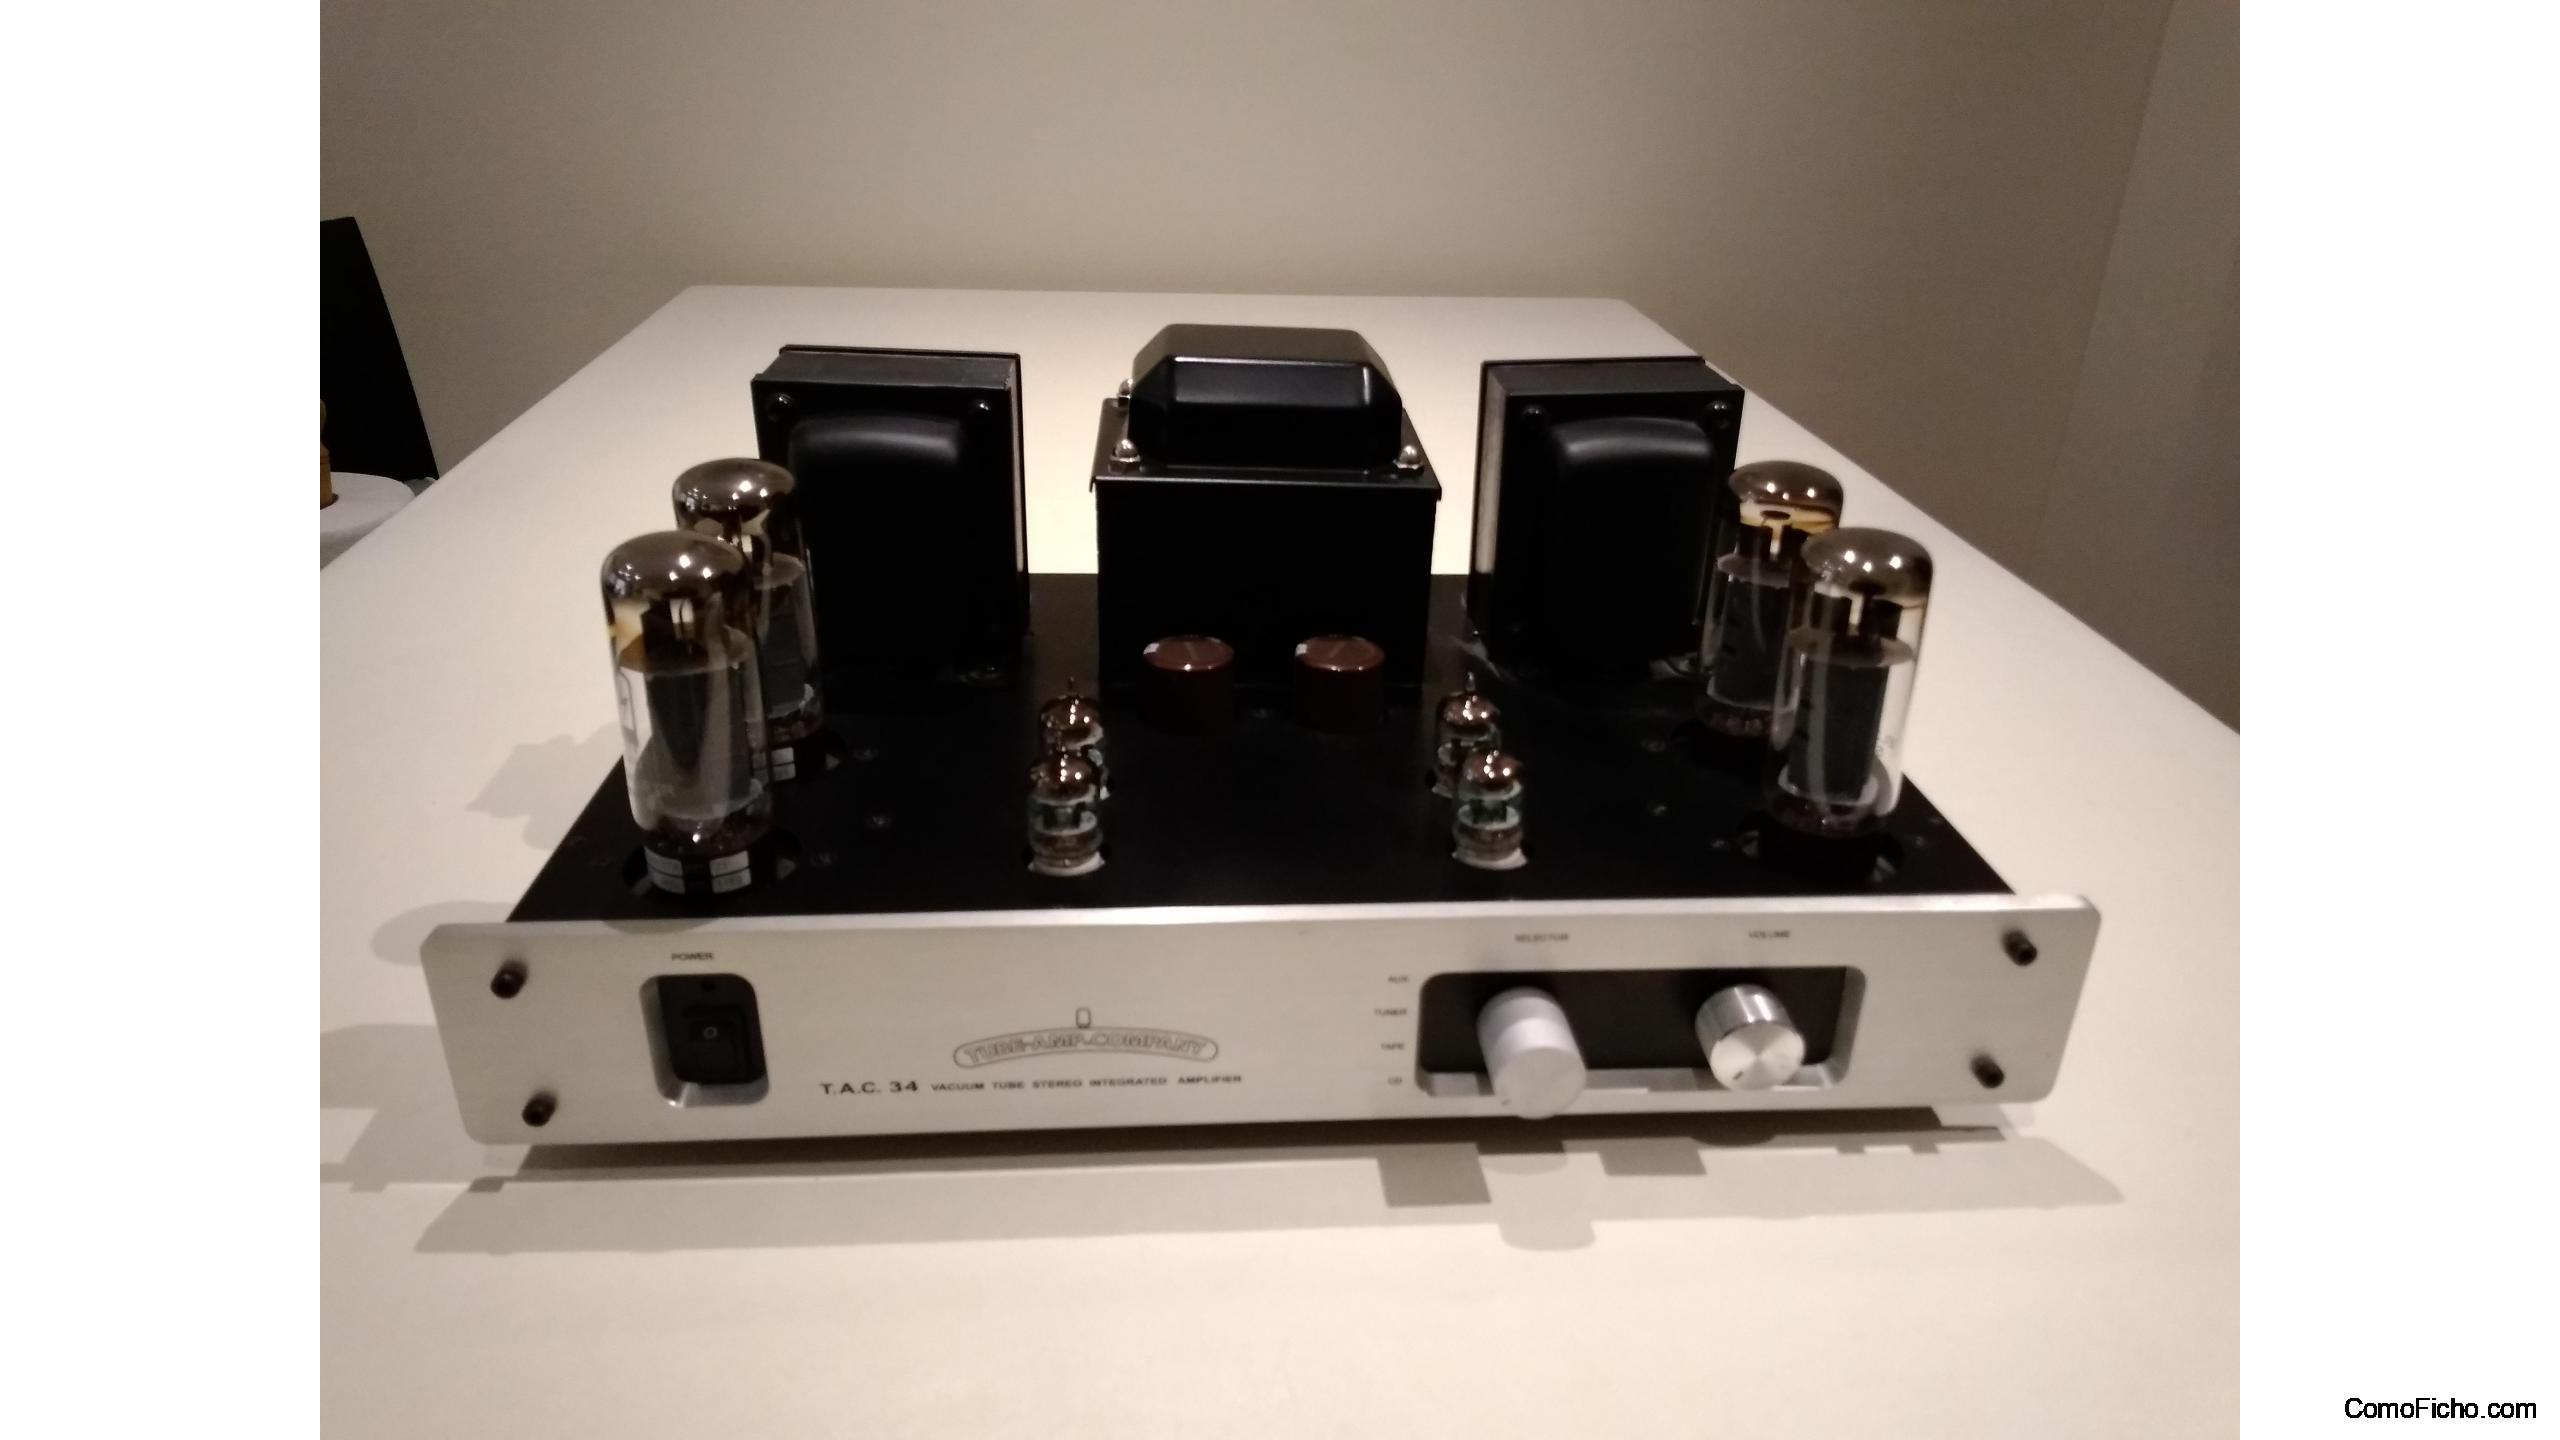 Amplificador válvulas T.A.C.-34. VENDIDO, Amplificadores, Barcelona